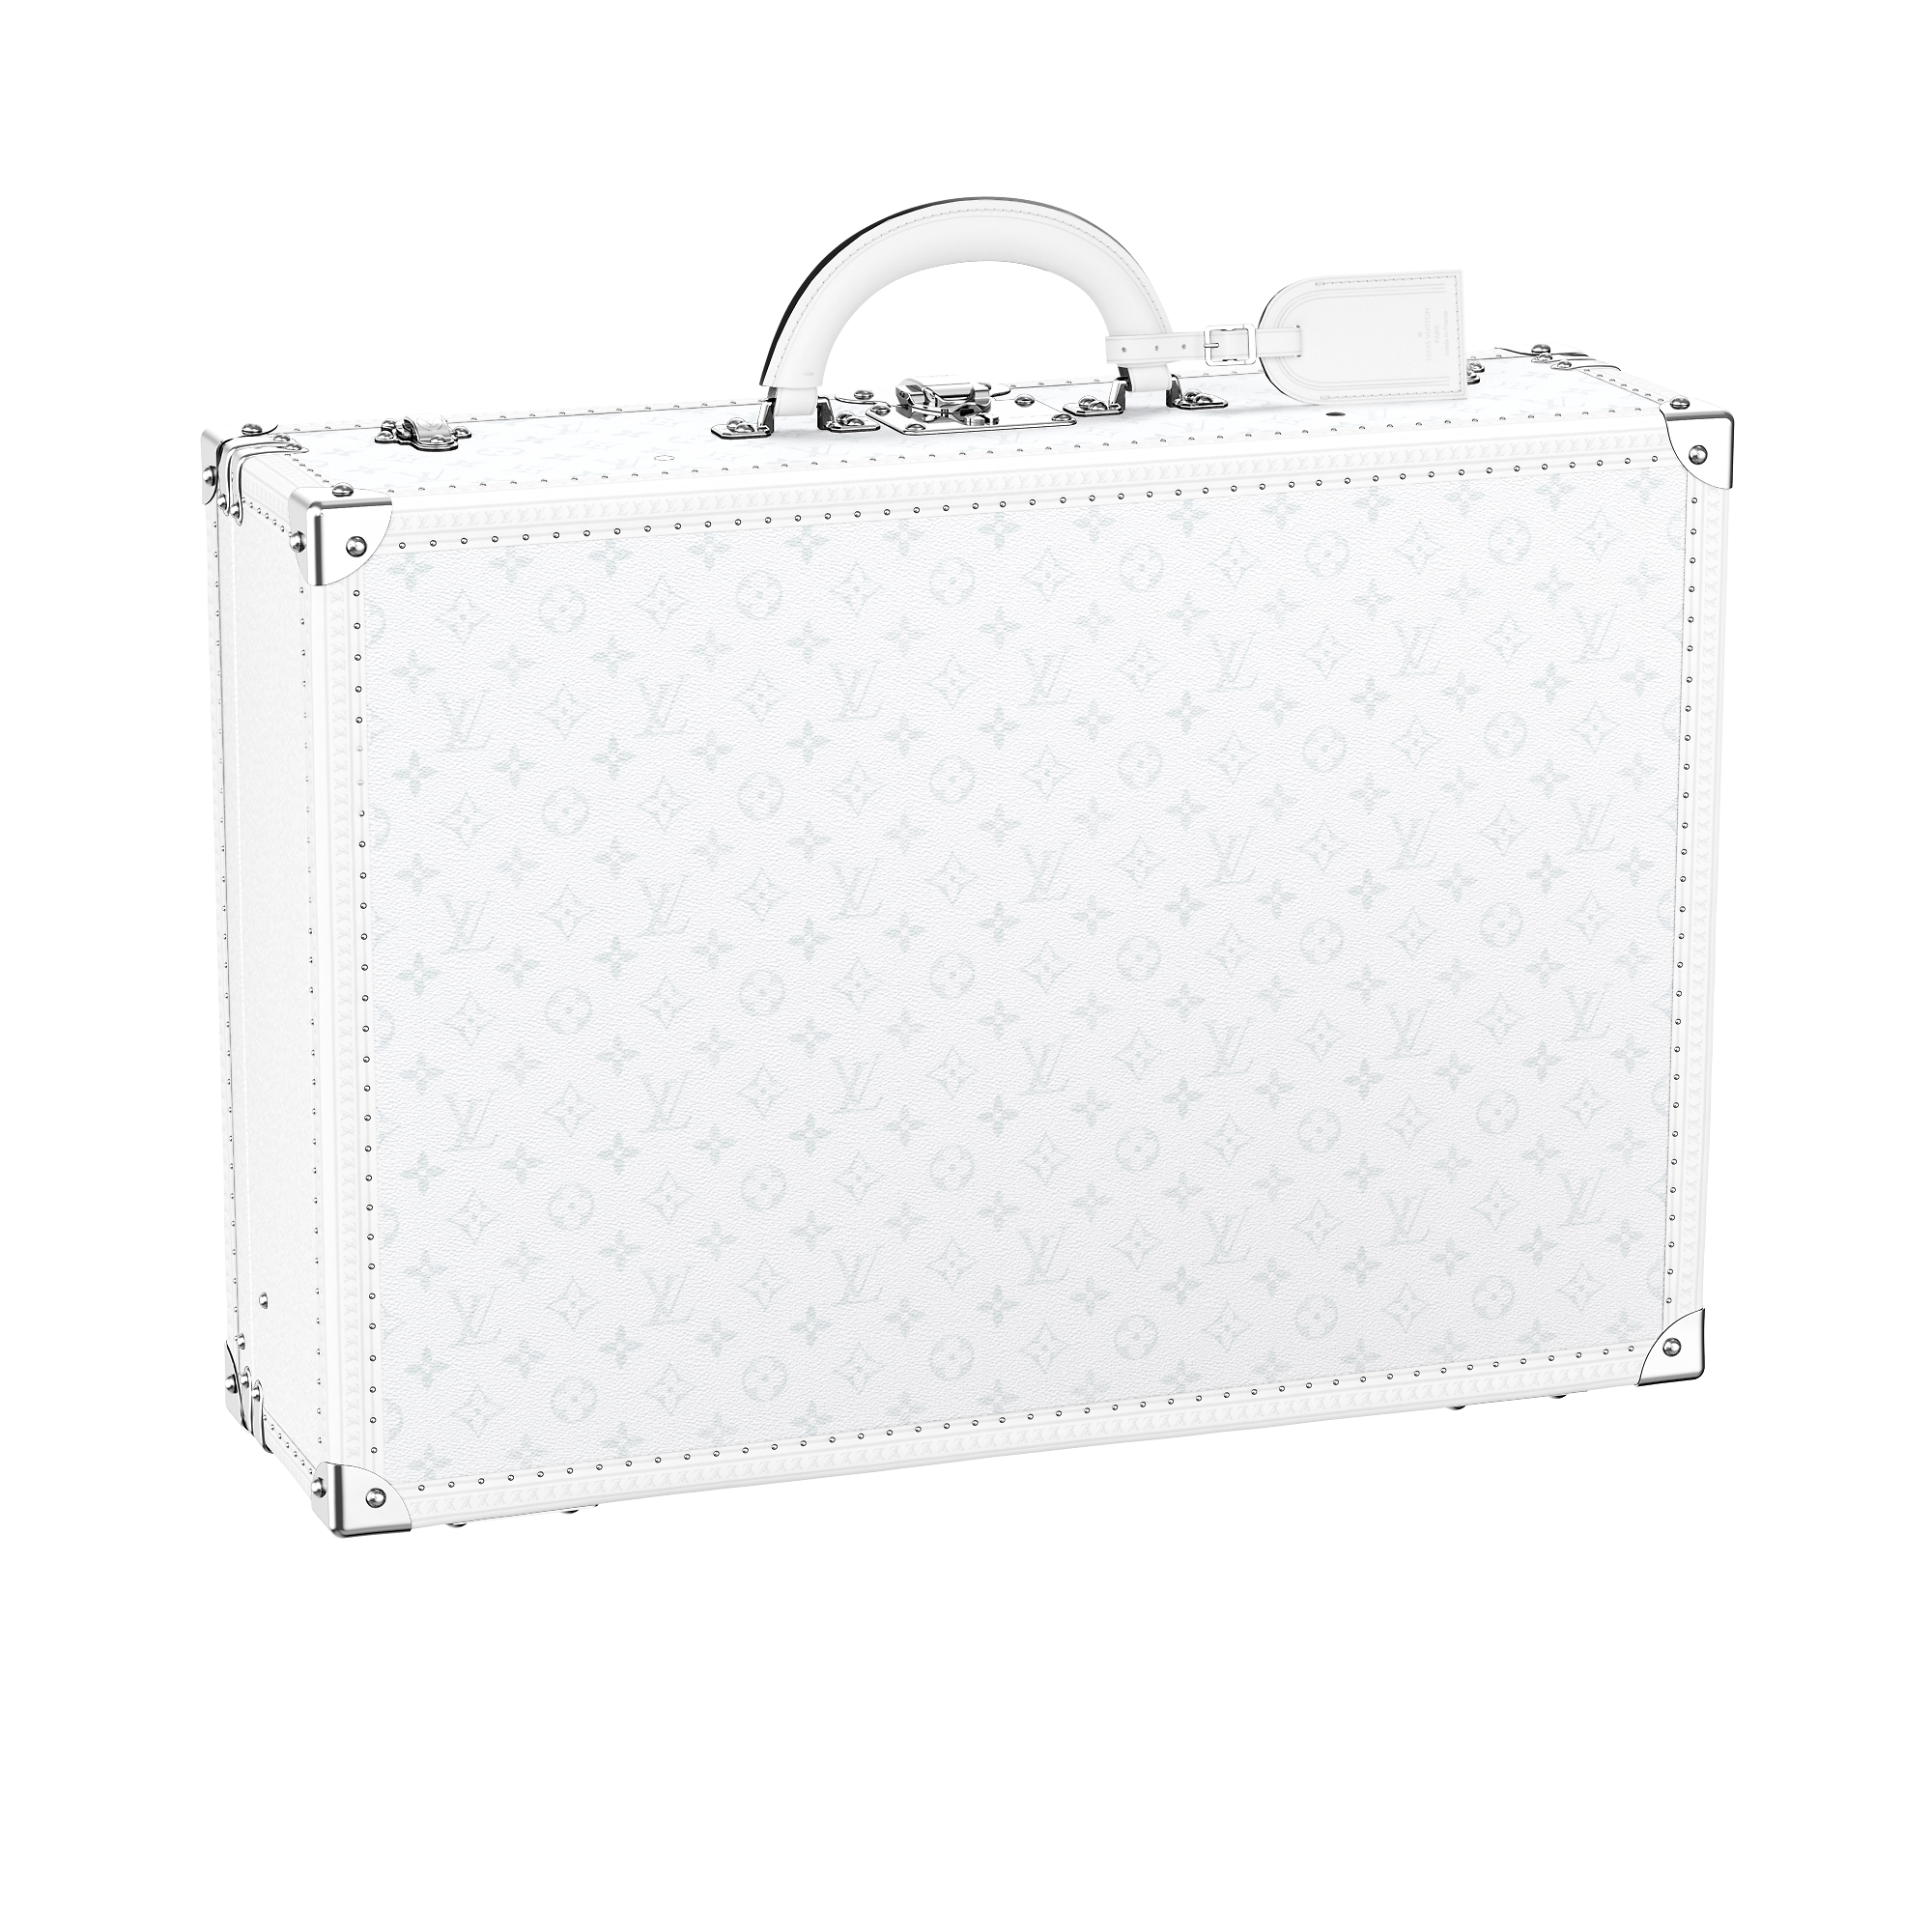 Louis Vuitton Bisten 60 Taigarama – Art of Living – Trunks and Travel M30957 Bisten